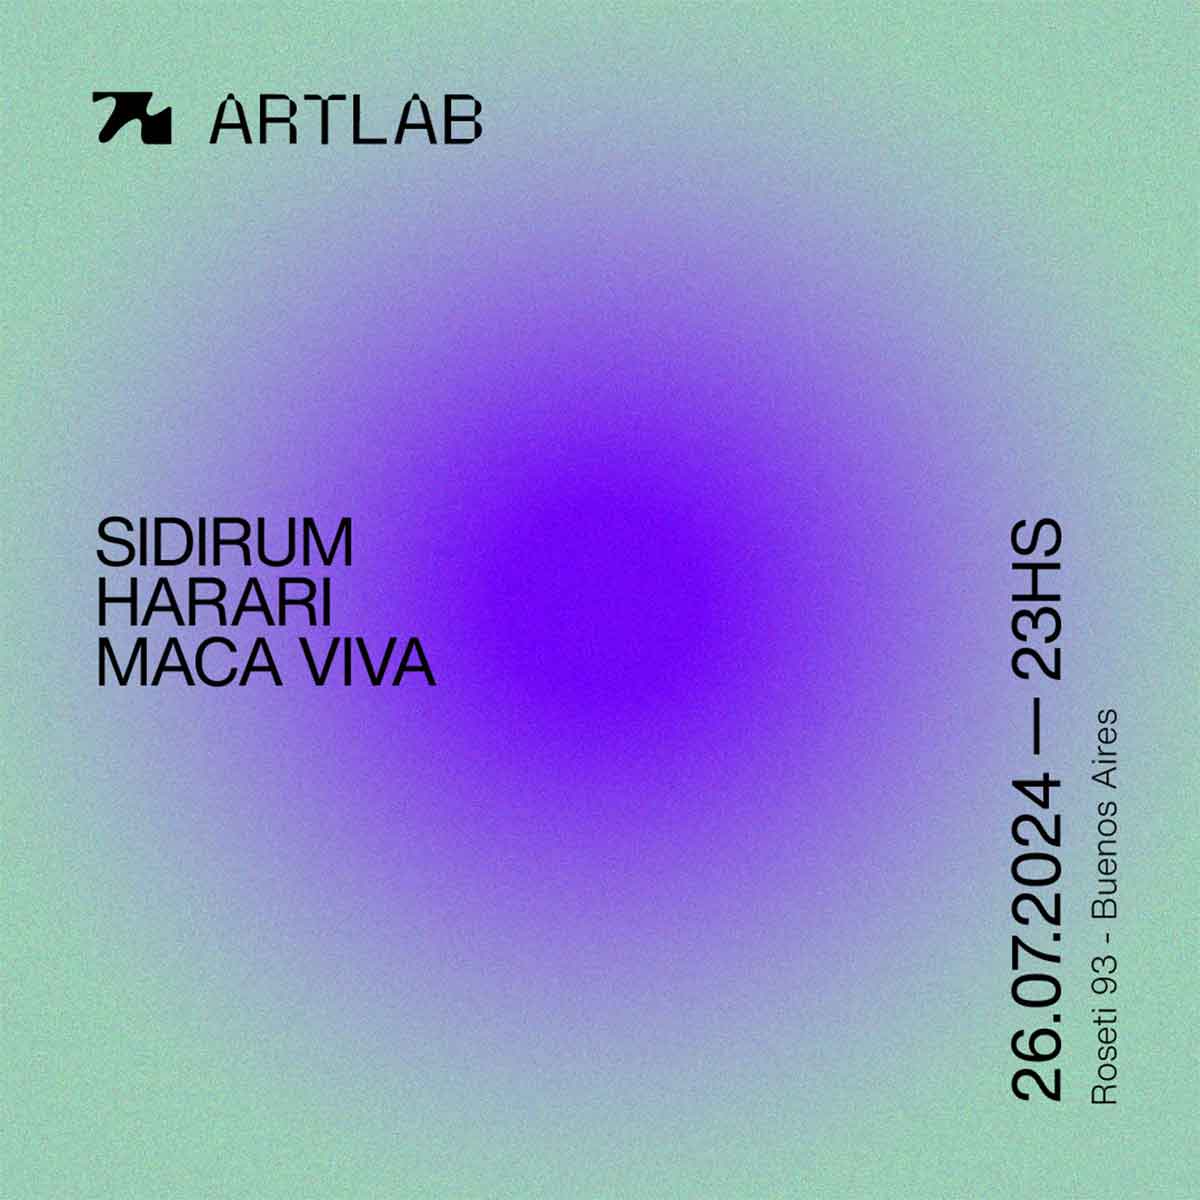 Sidirum, Harari y Maca Viva en Artlab